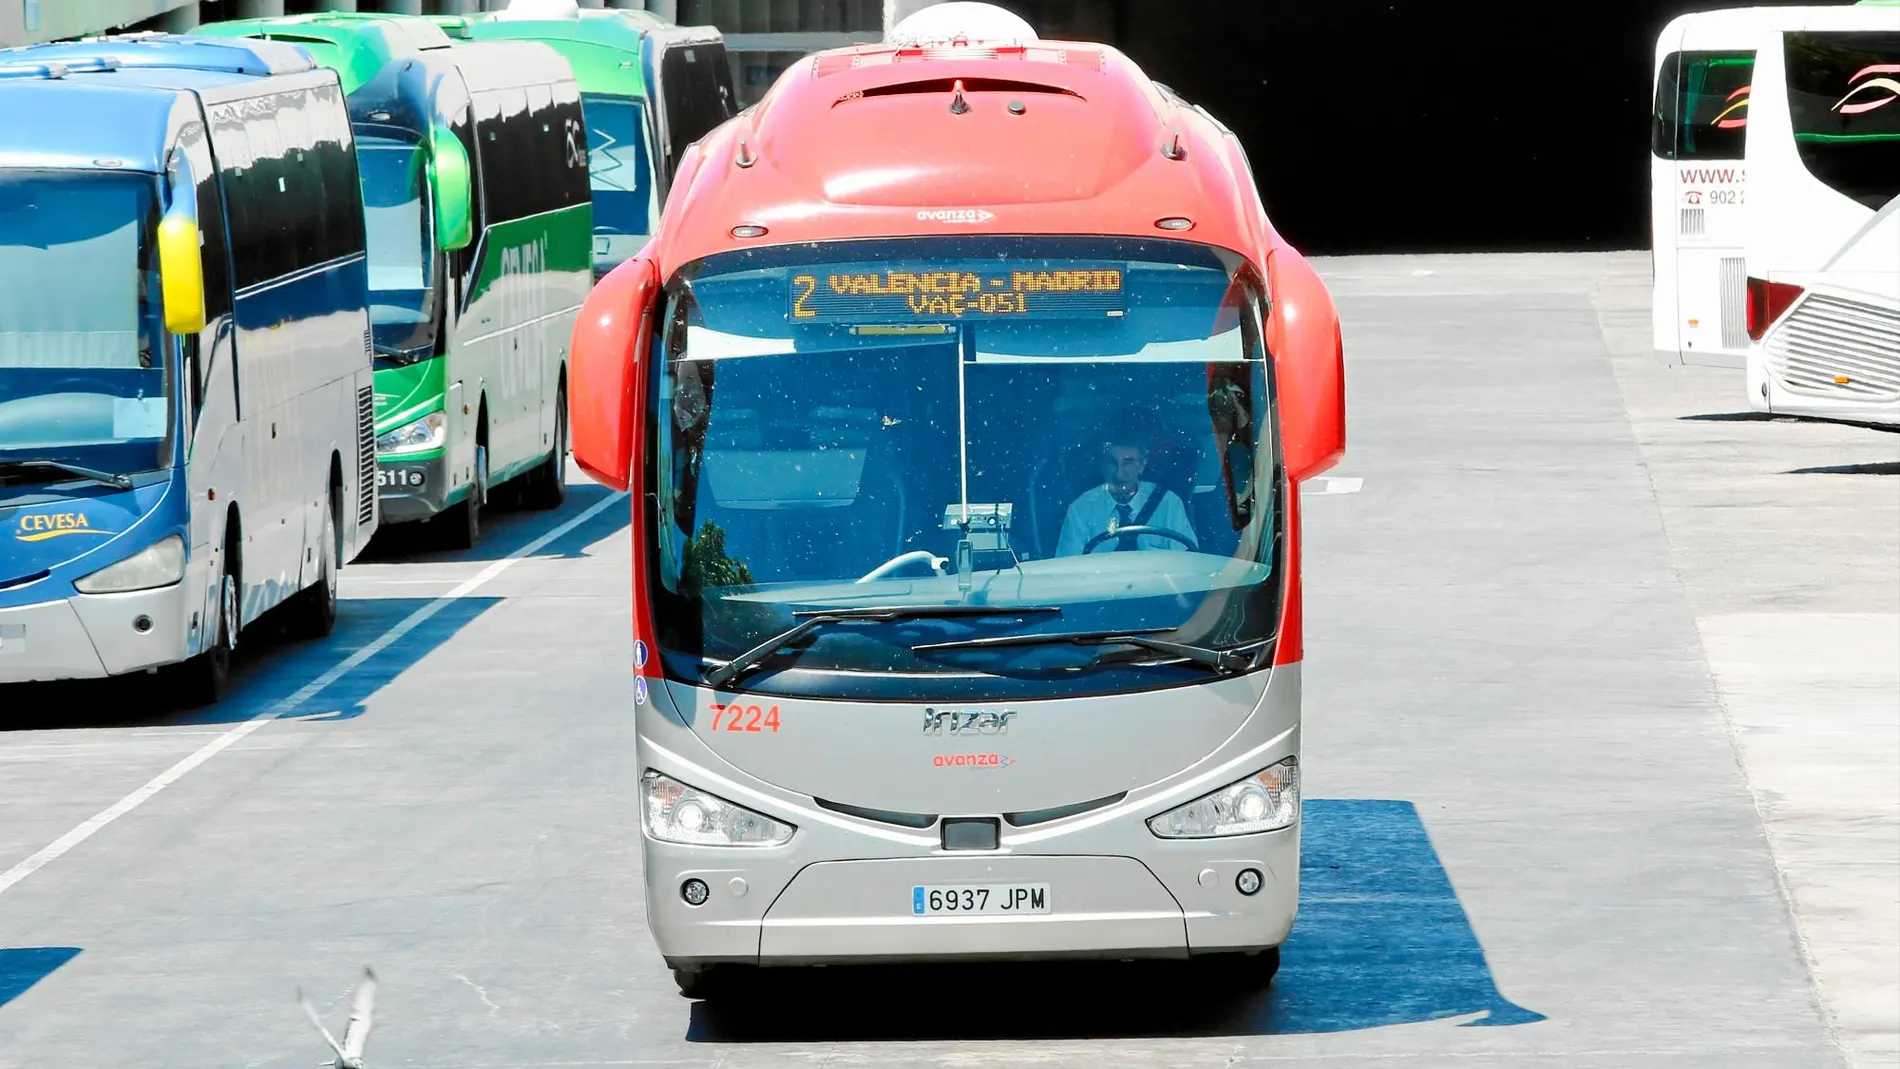 Los autobuses de largo recorrido son el medio de transporte interurbano más usado, por encima del avión y del tren / Foto: Rubén Mondelo